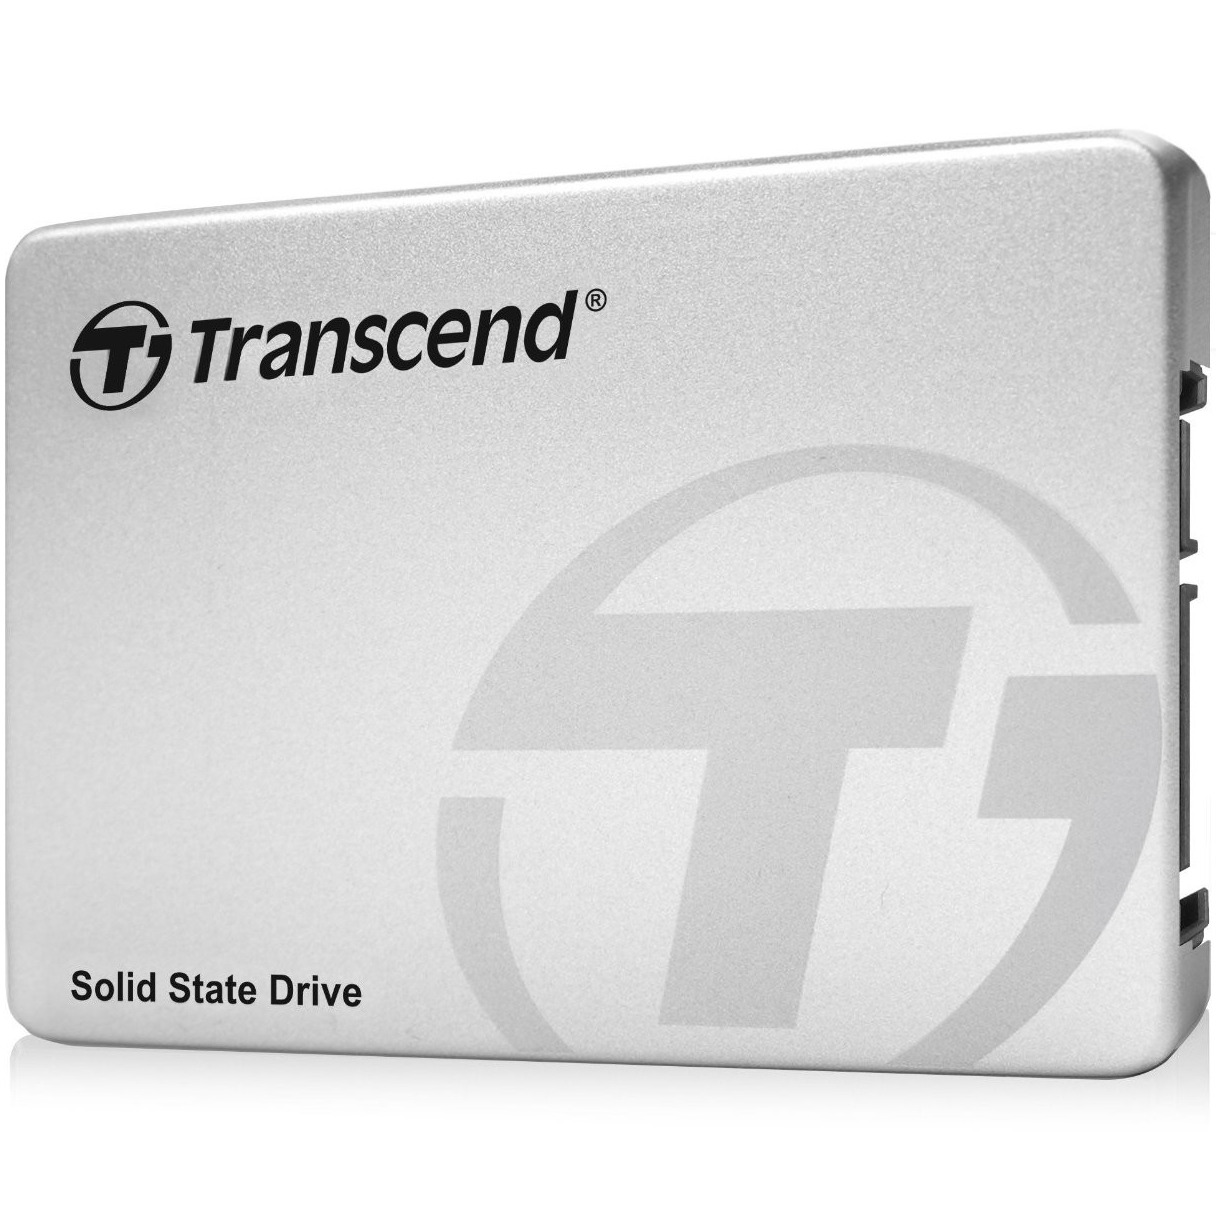  SSD Transcend 370 256GB SATA3, 570/320 MBs 